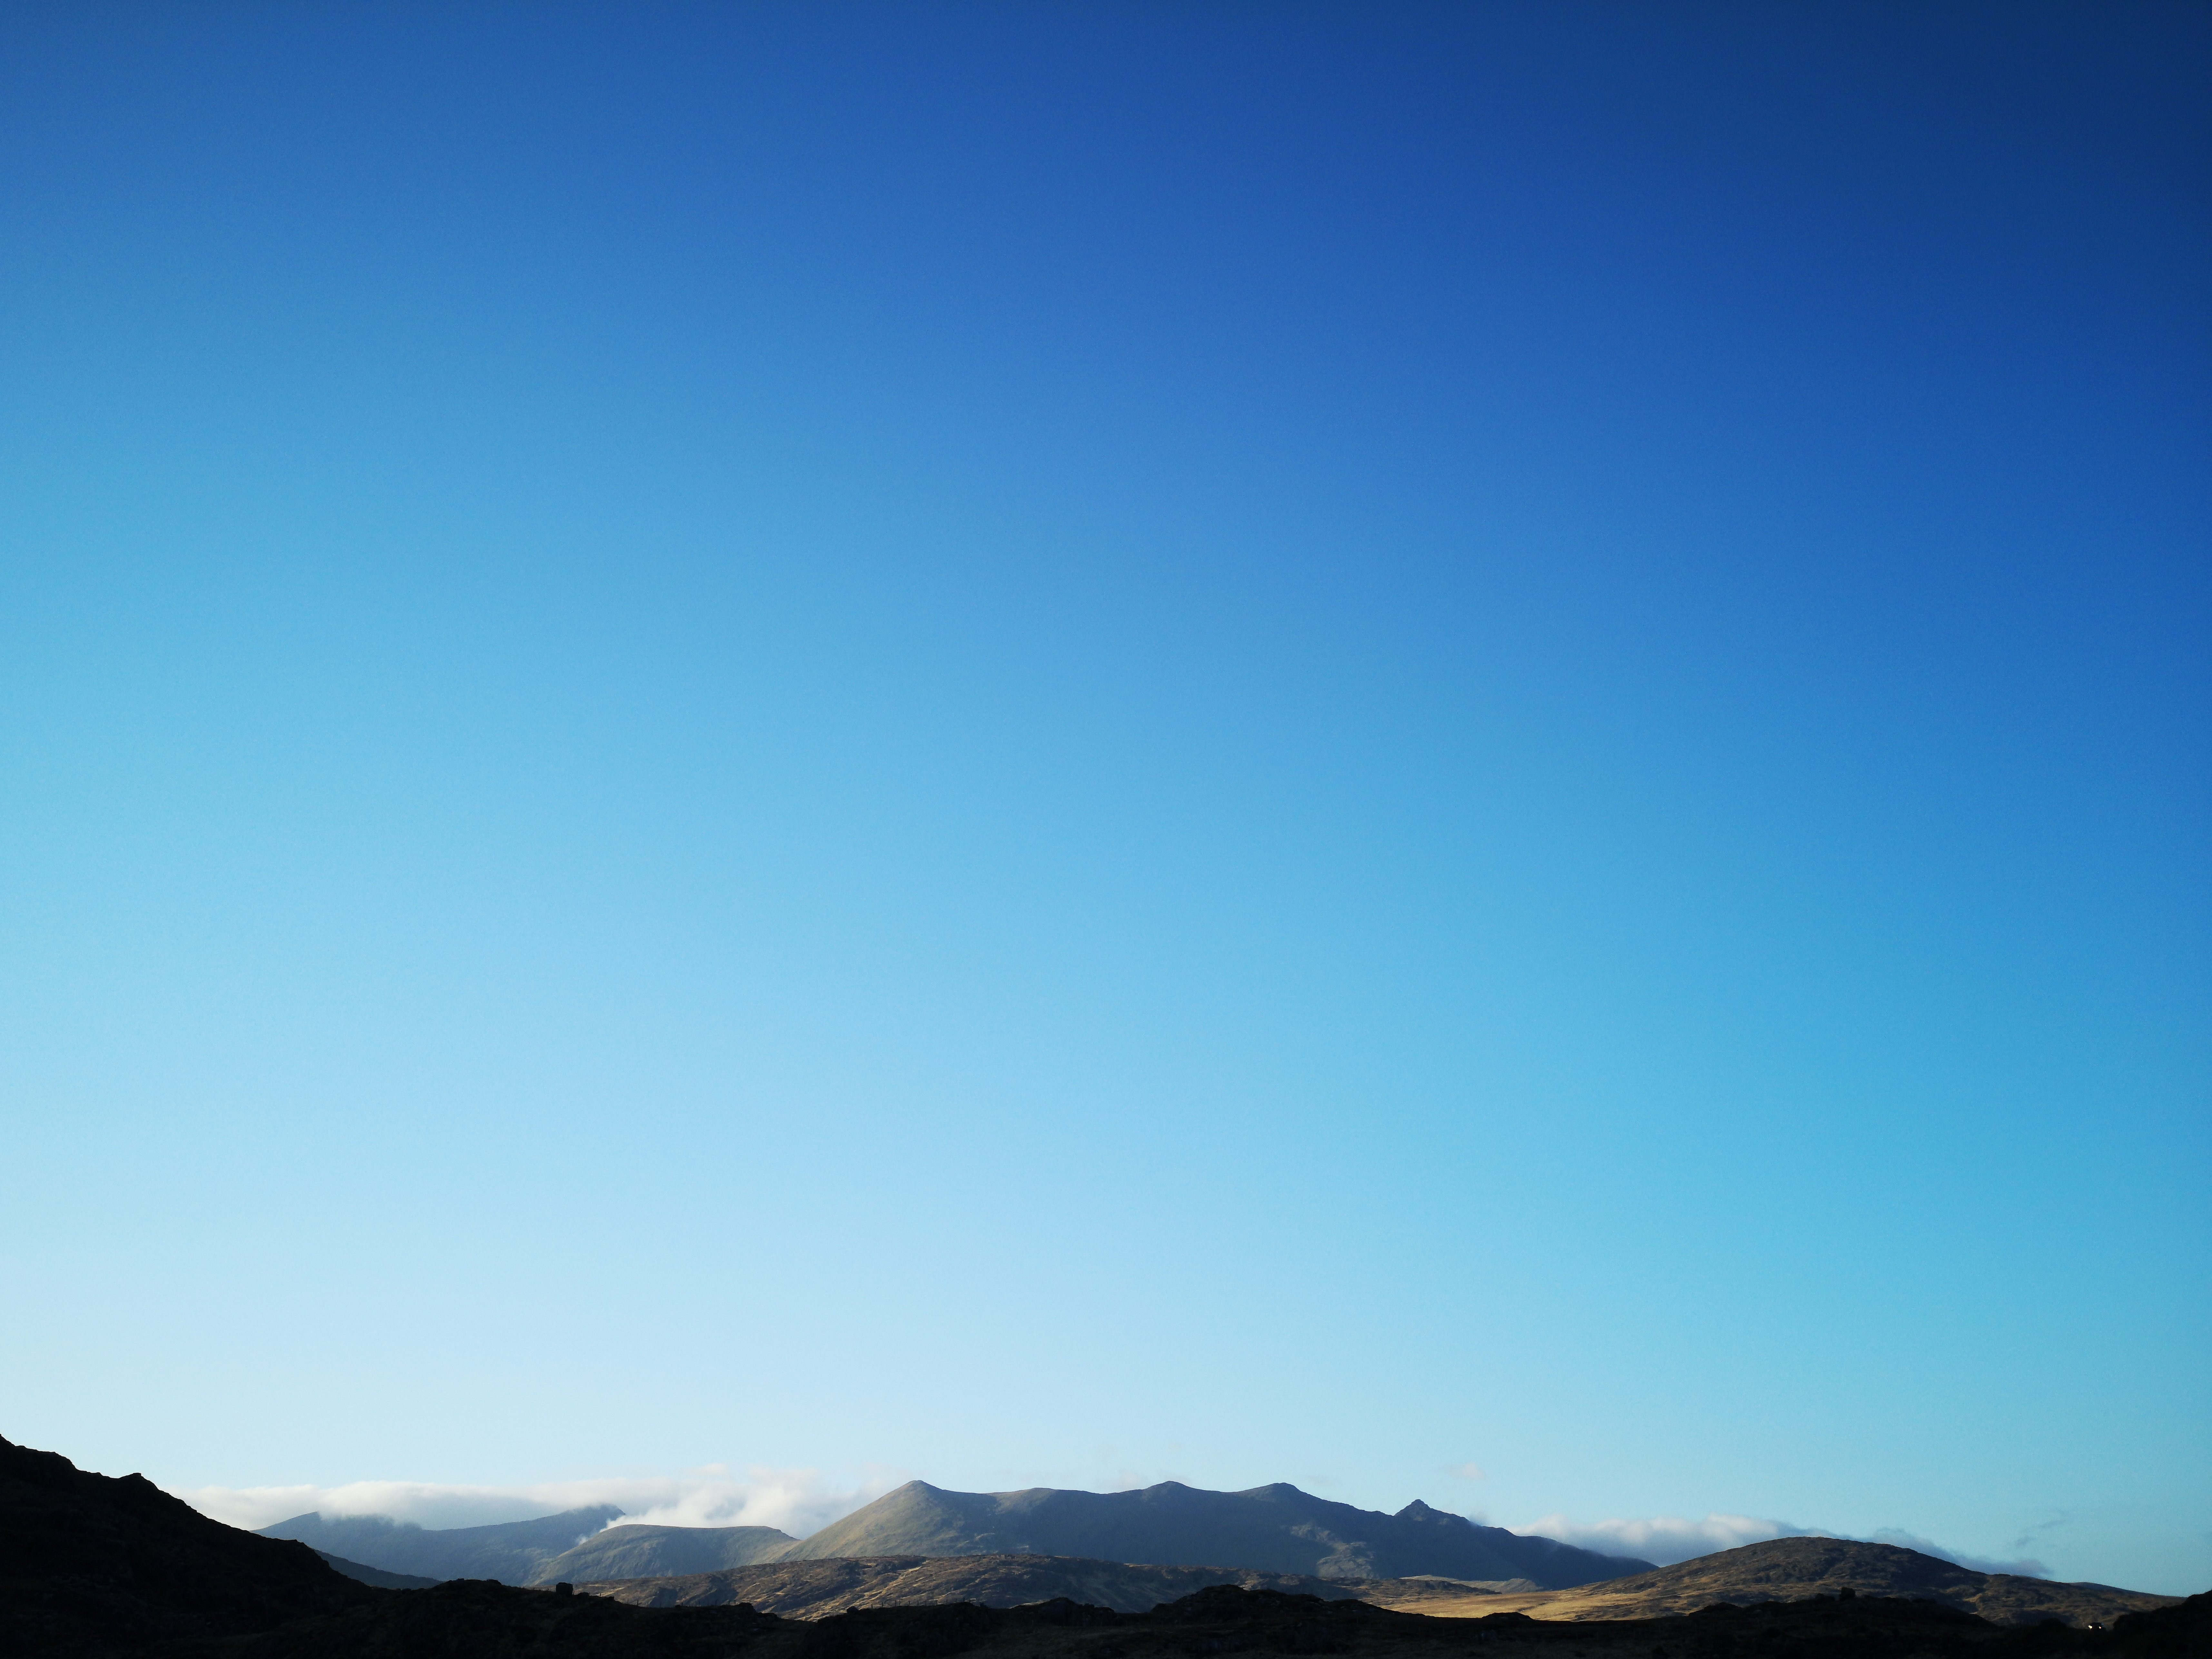 Foto do céu azul sobre montanhas iluminadas pelo sol